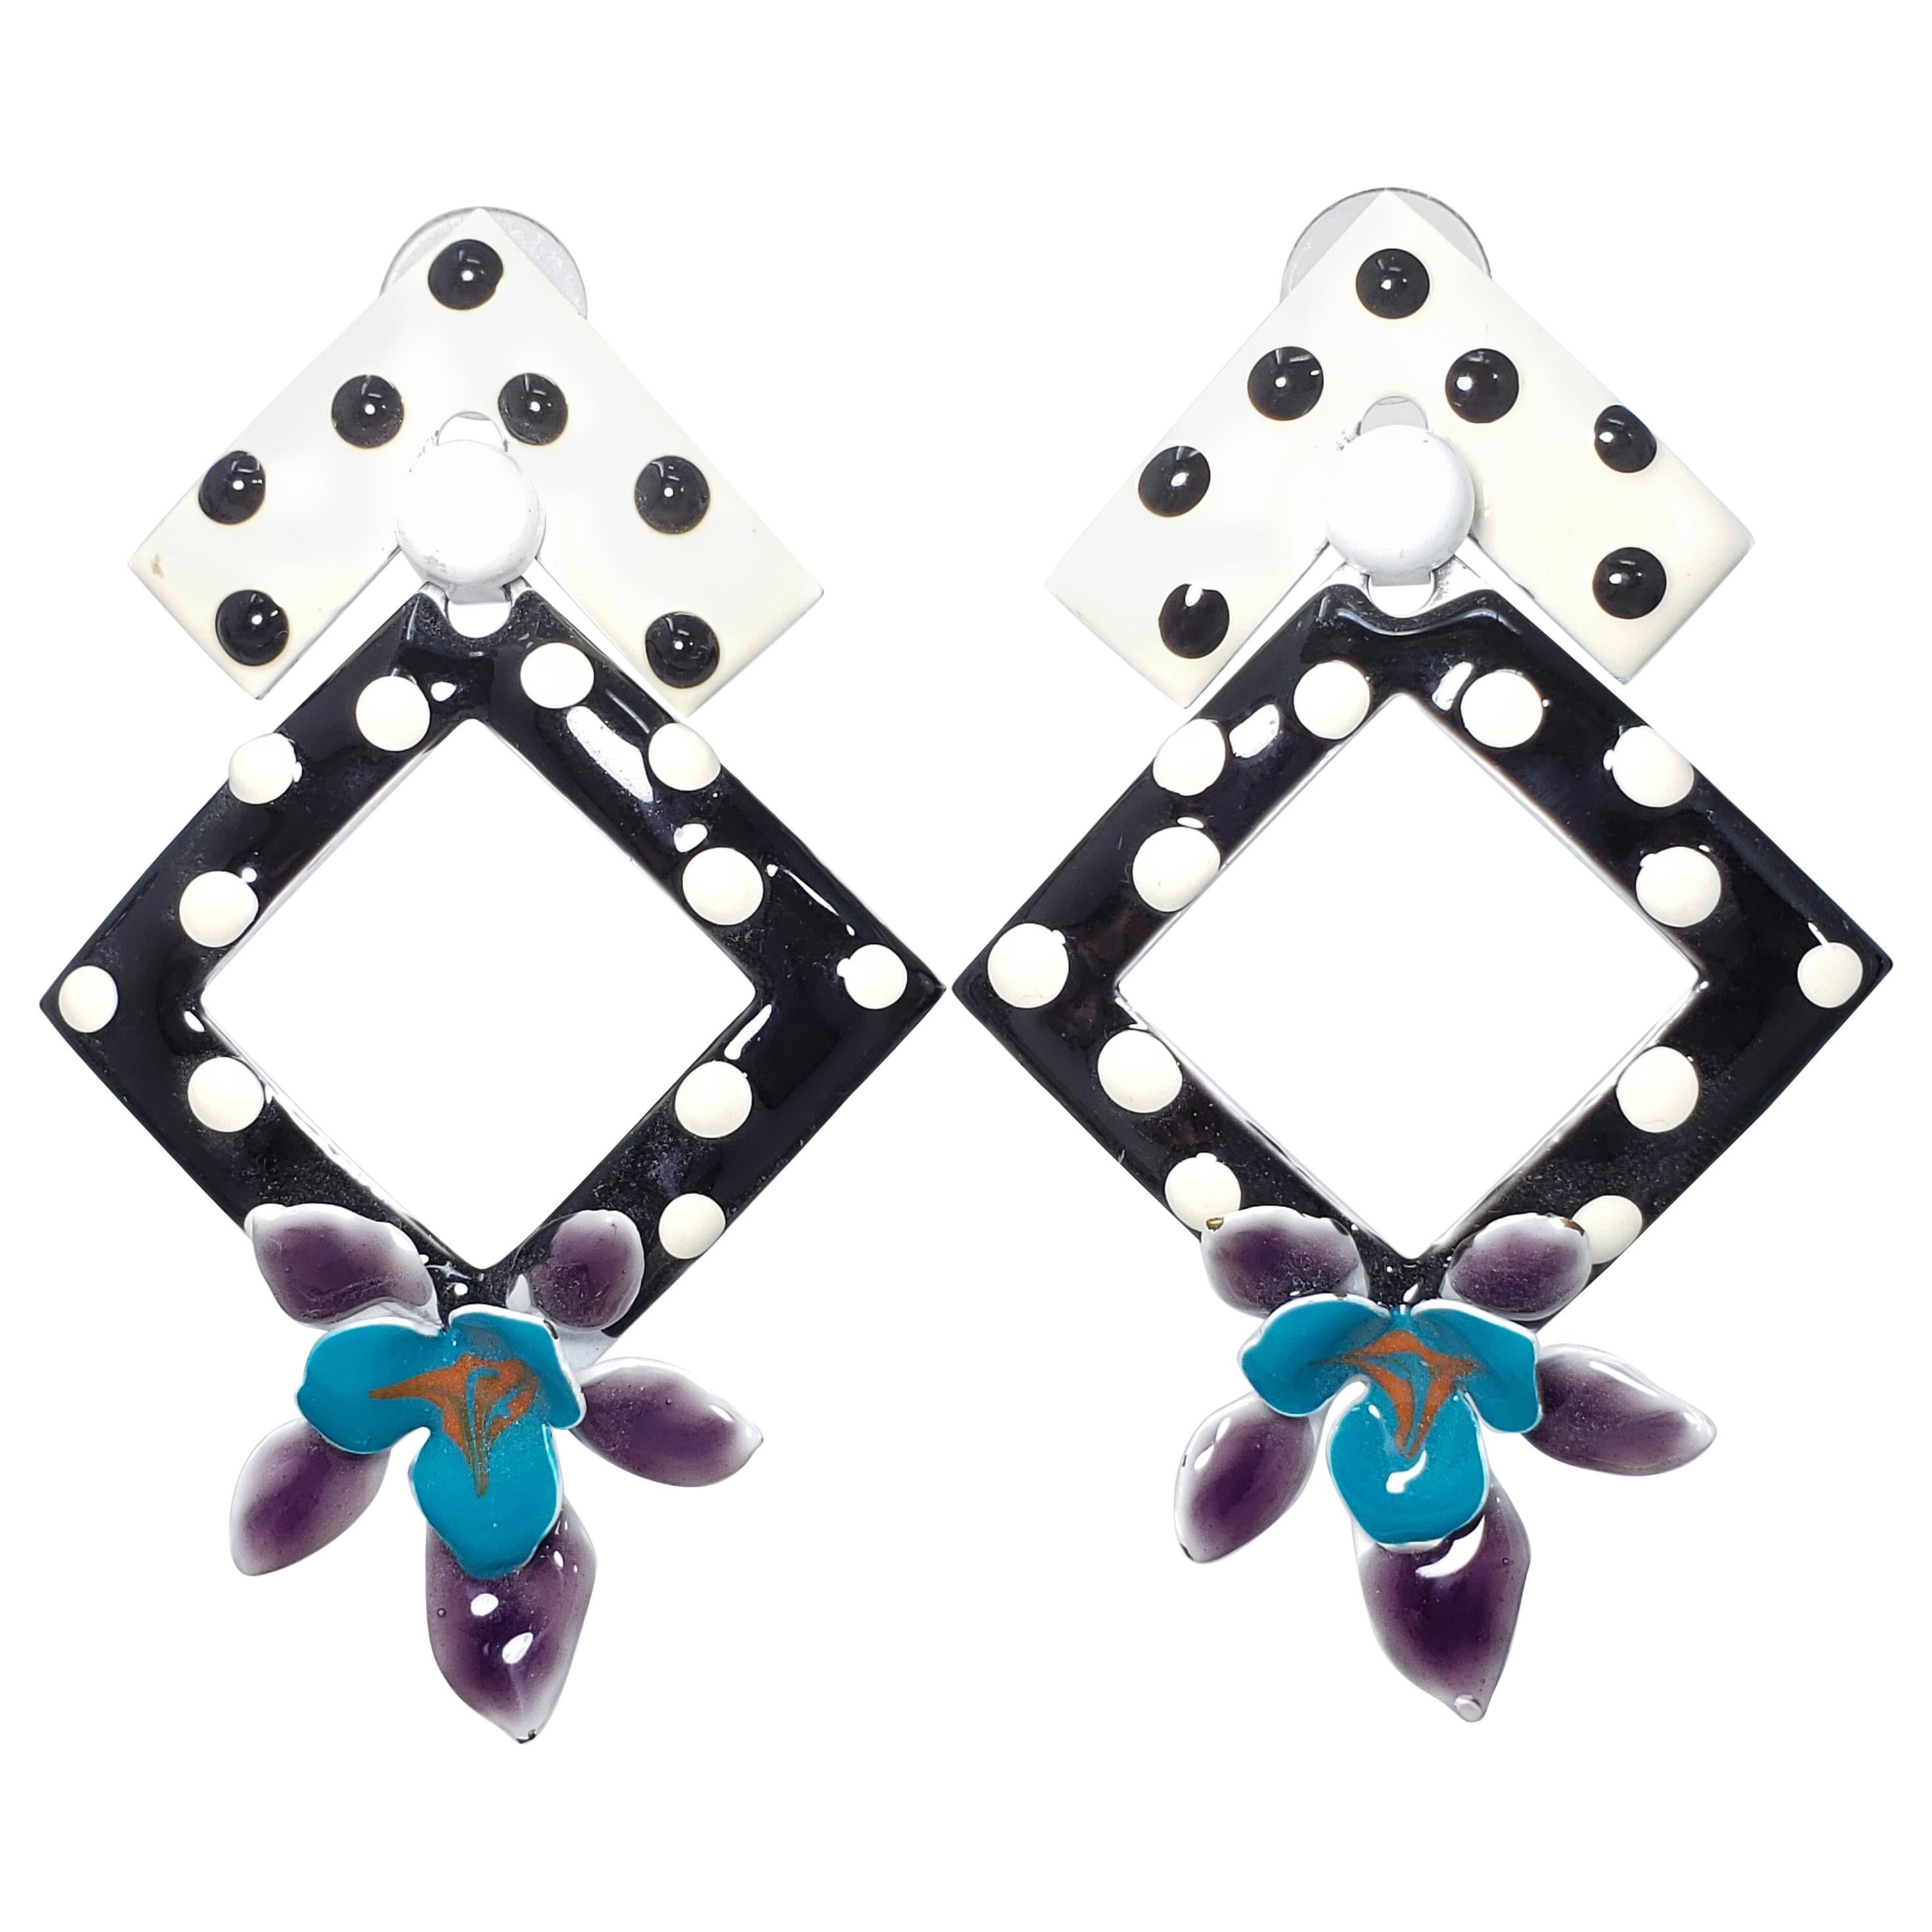 Painted Enamel Polka-Dot Flower Earrings, Post Backs, Black White Teal Purple For Sale